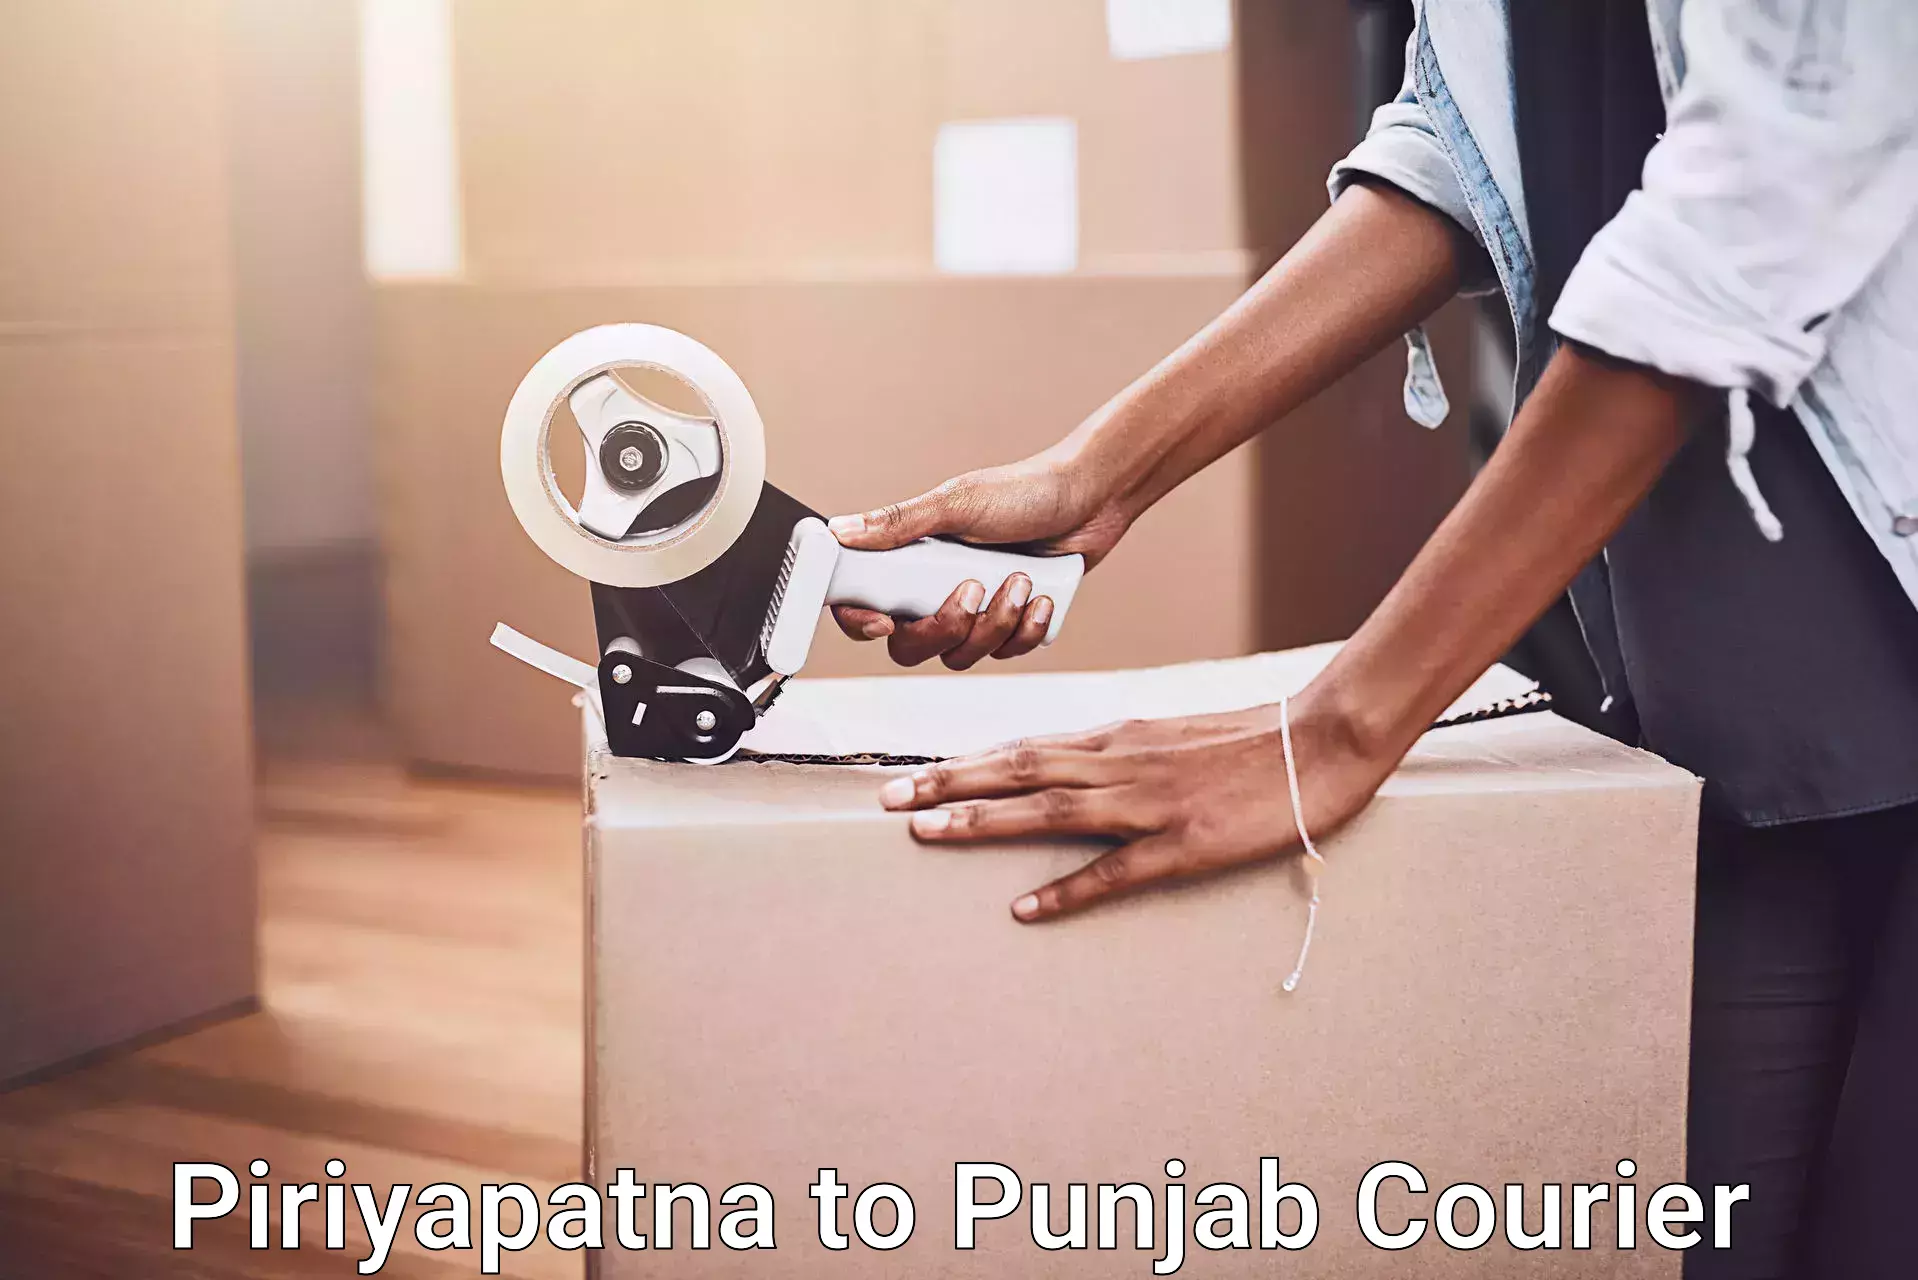 Specialized furniture moving Piriyapatna to Punjab